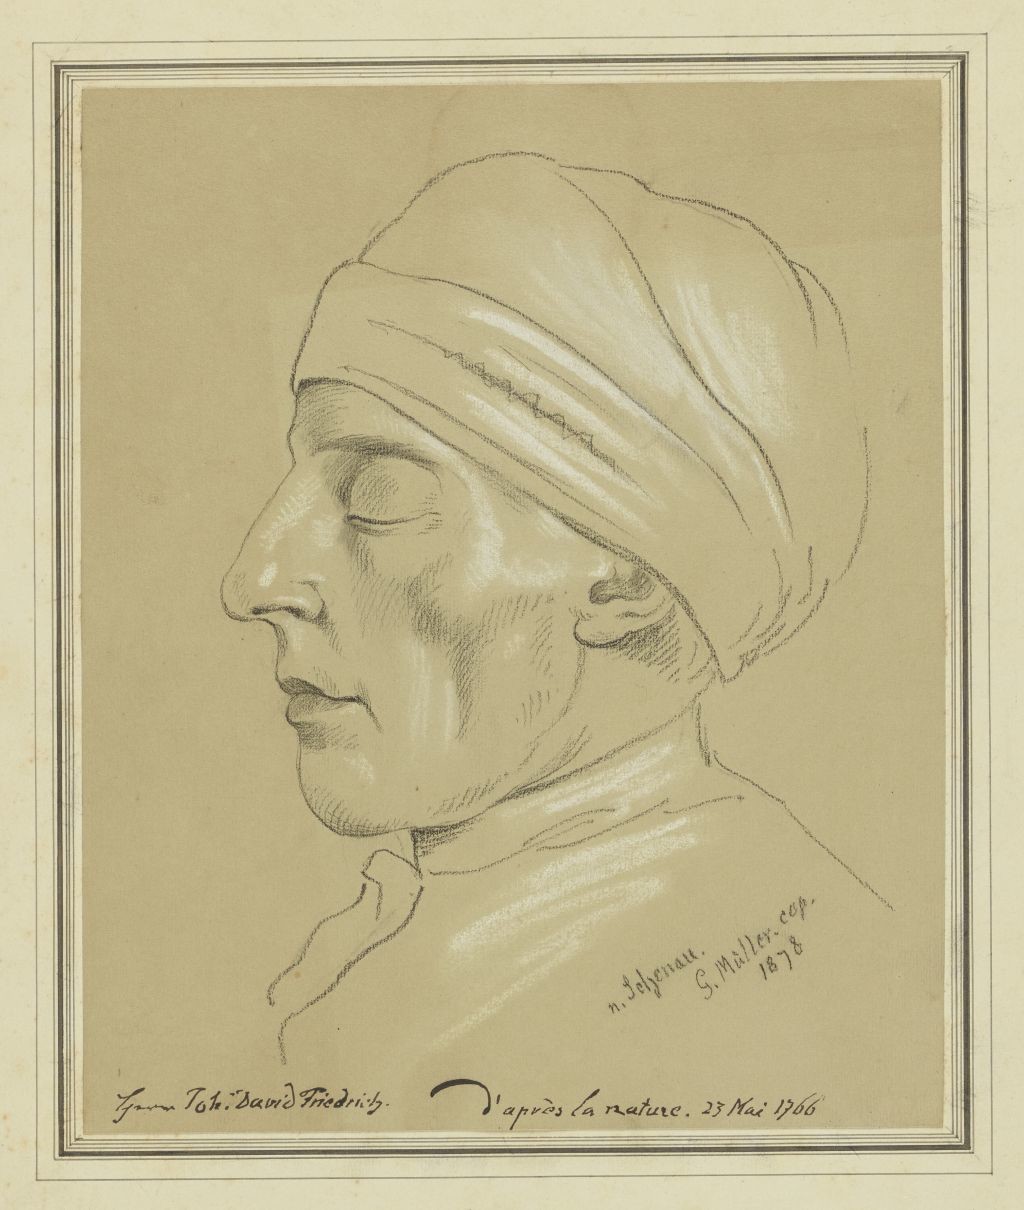 Kopf von Johann David Friedrich im Profil nach links mit geschlossenen Augen und Hausmütze (Deutsches Damast- und Frottiermuseum CC BY-NC-ND)